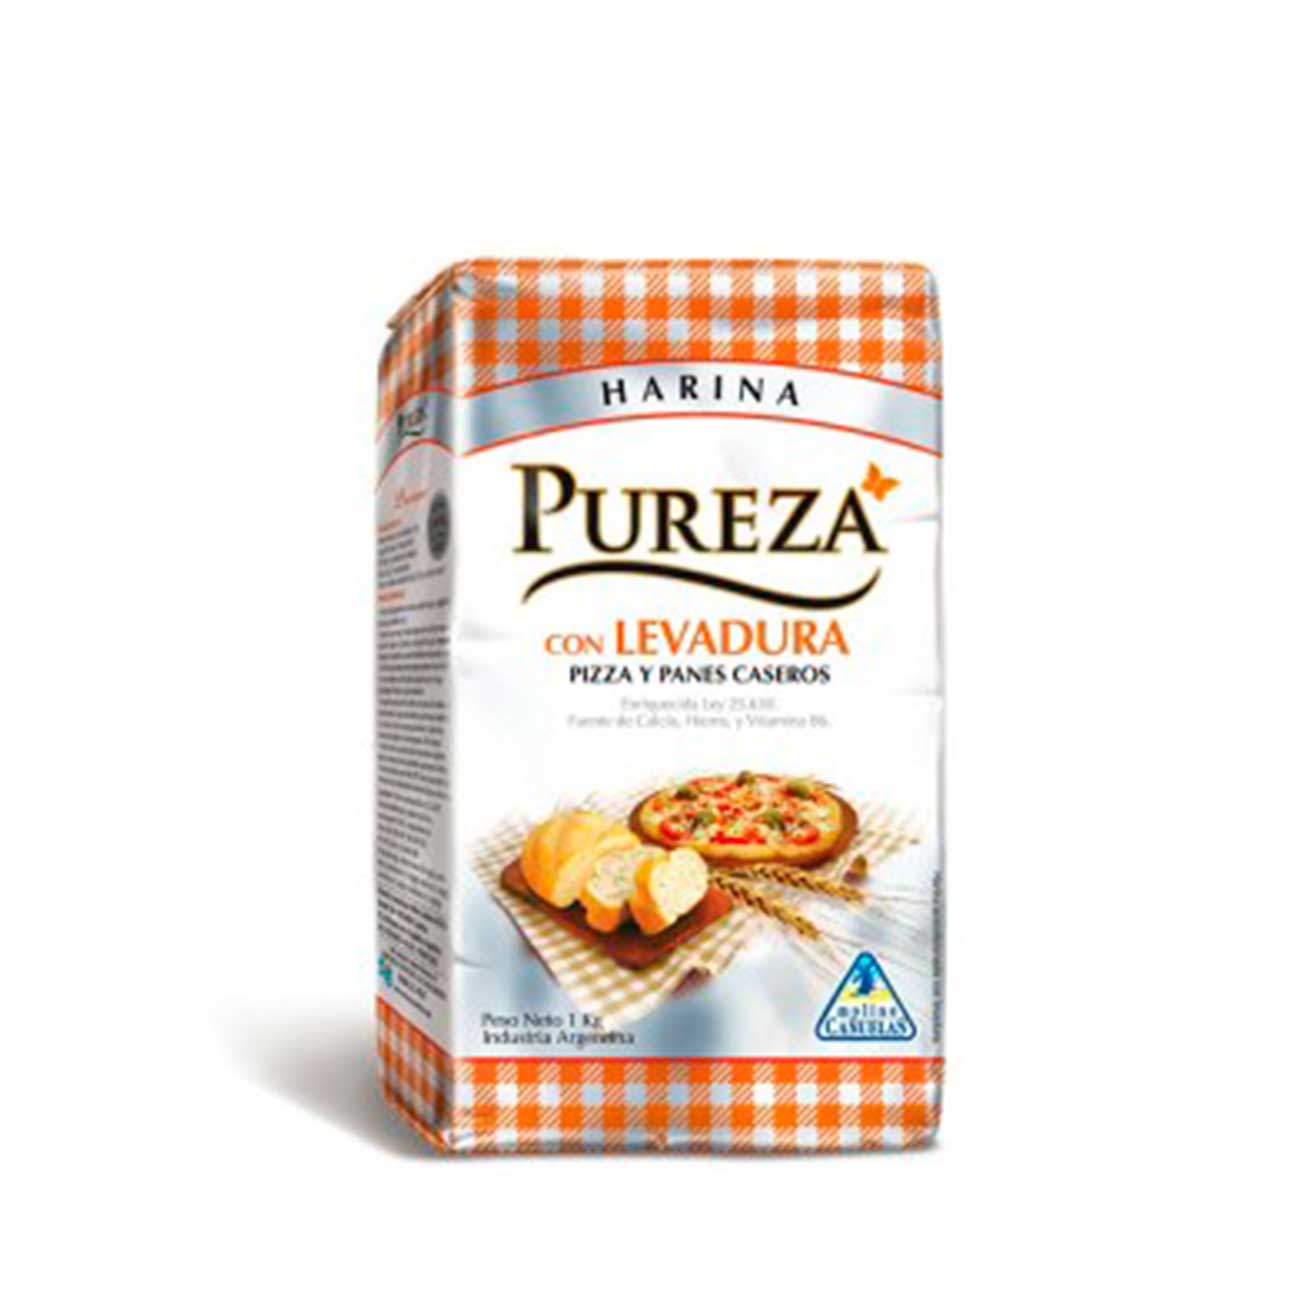 Harina con levadura pizza y panes 1k PUREZA